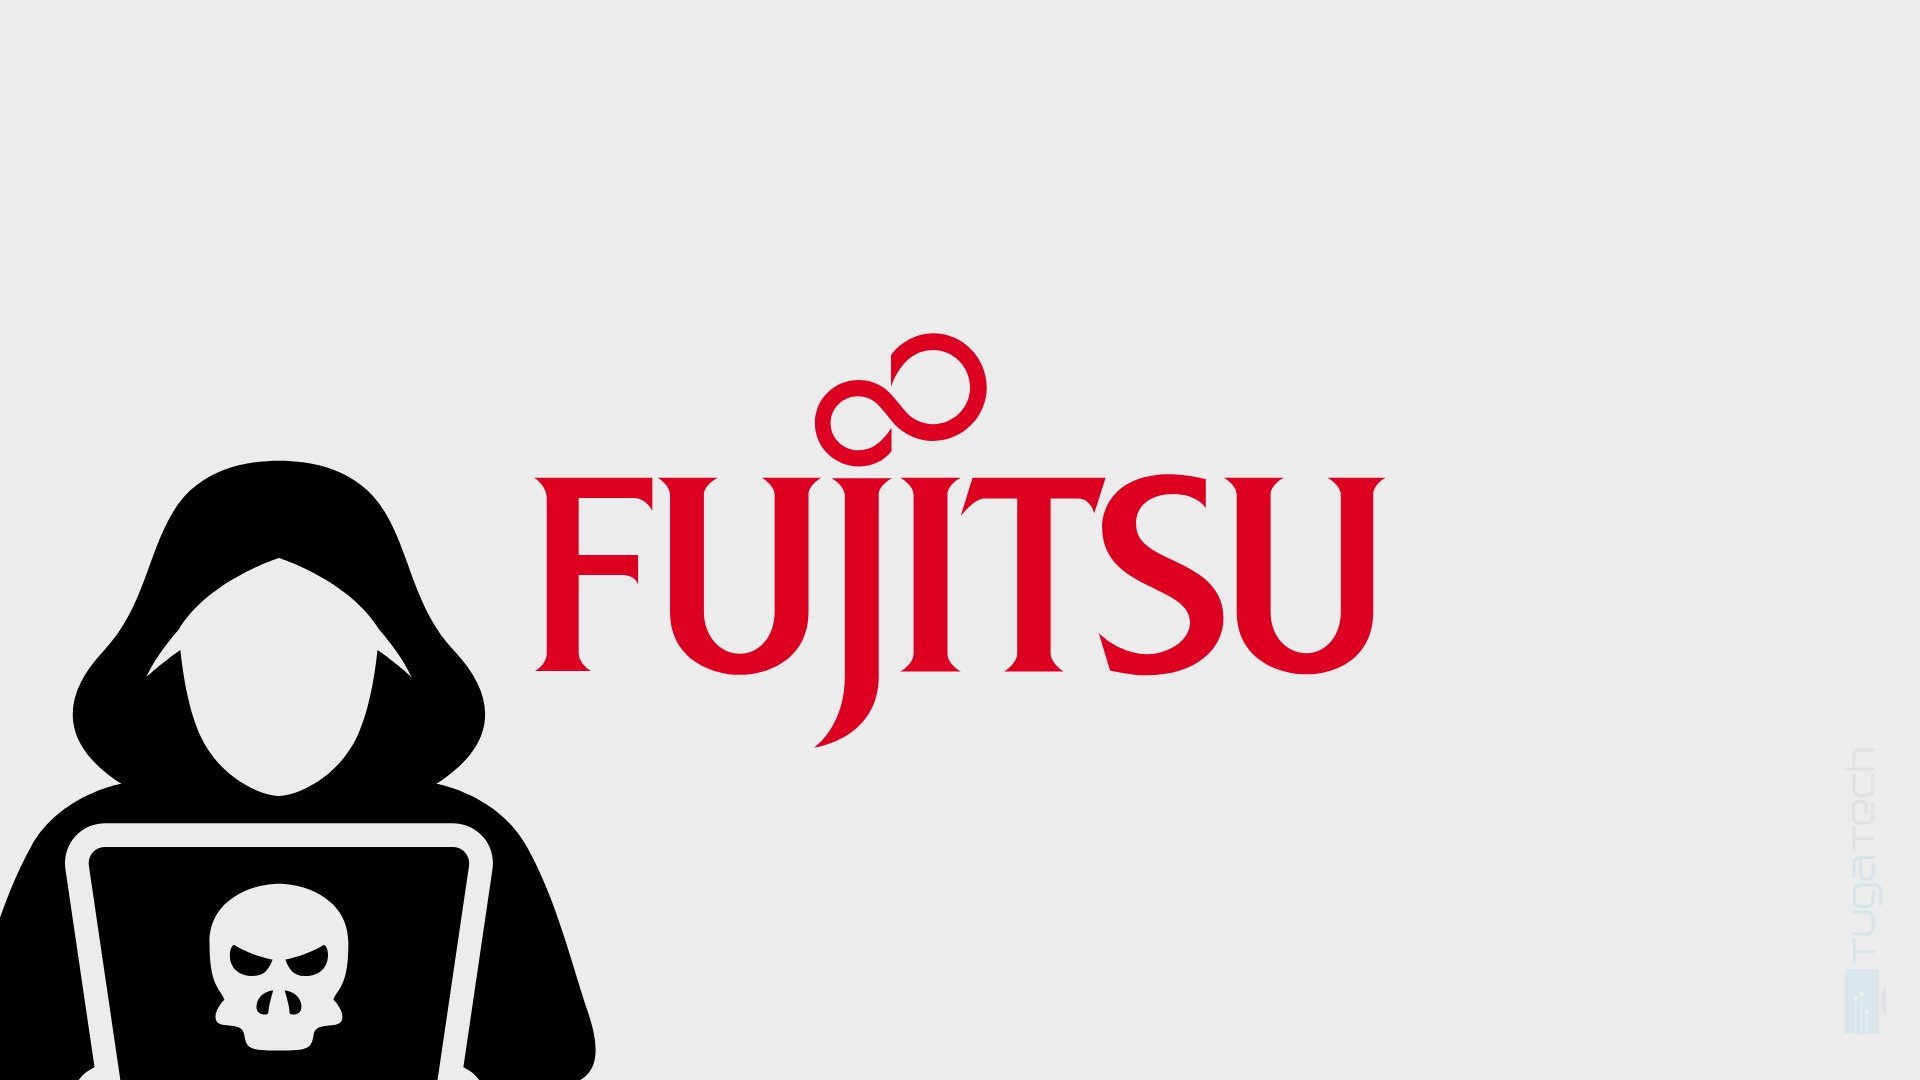 Logo da fujitsu com hacker